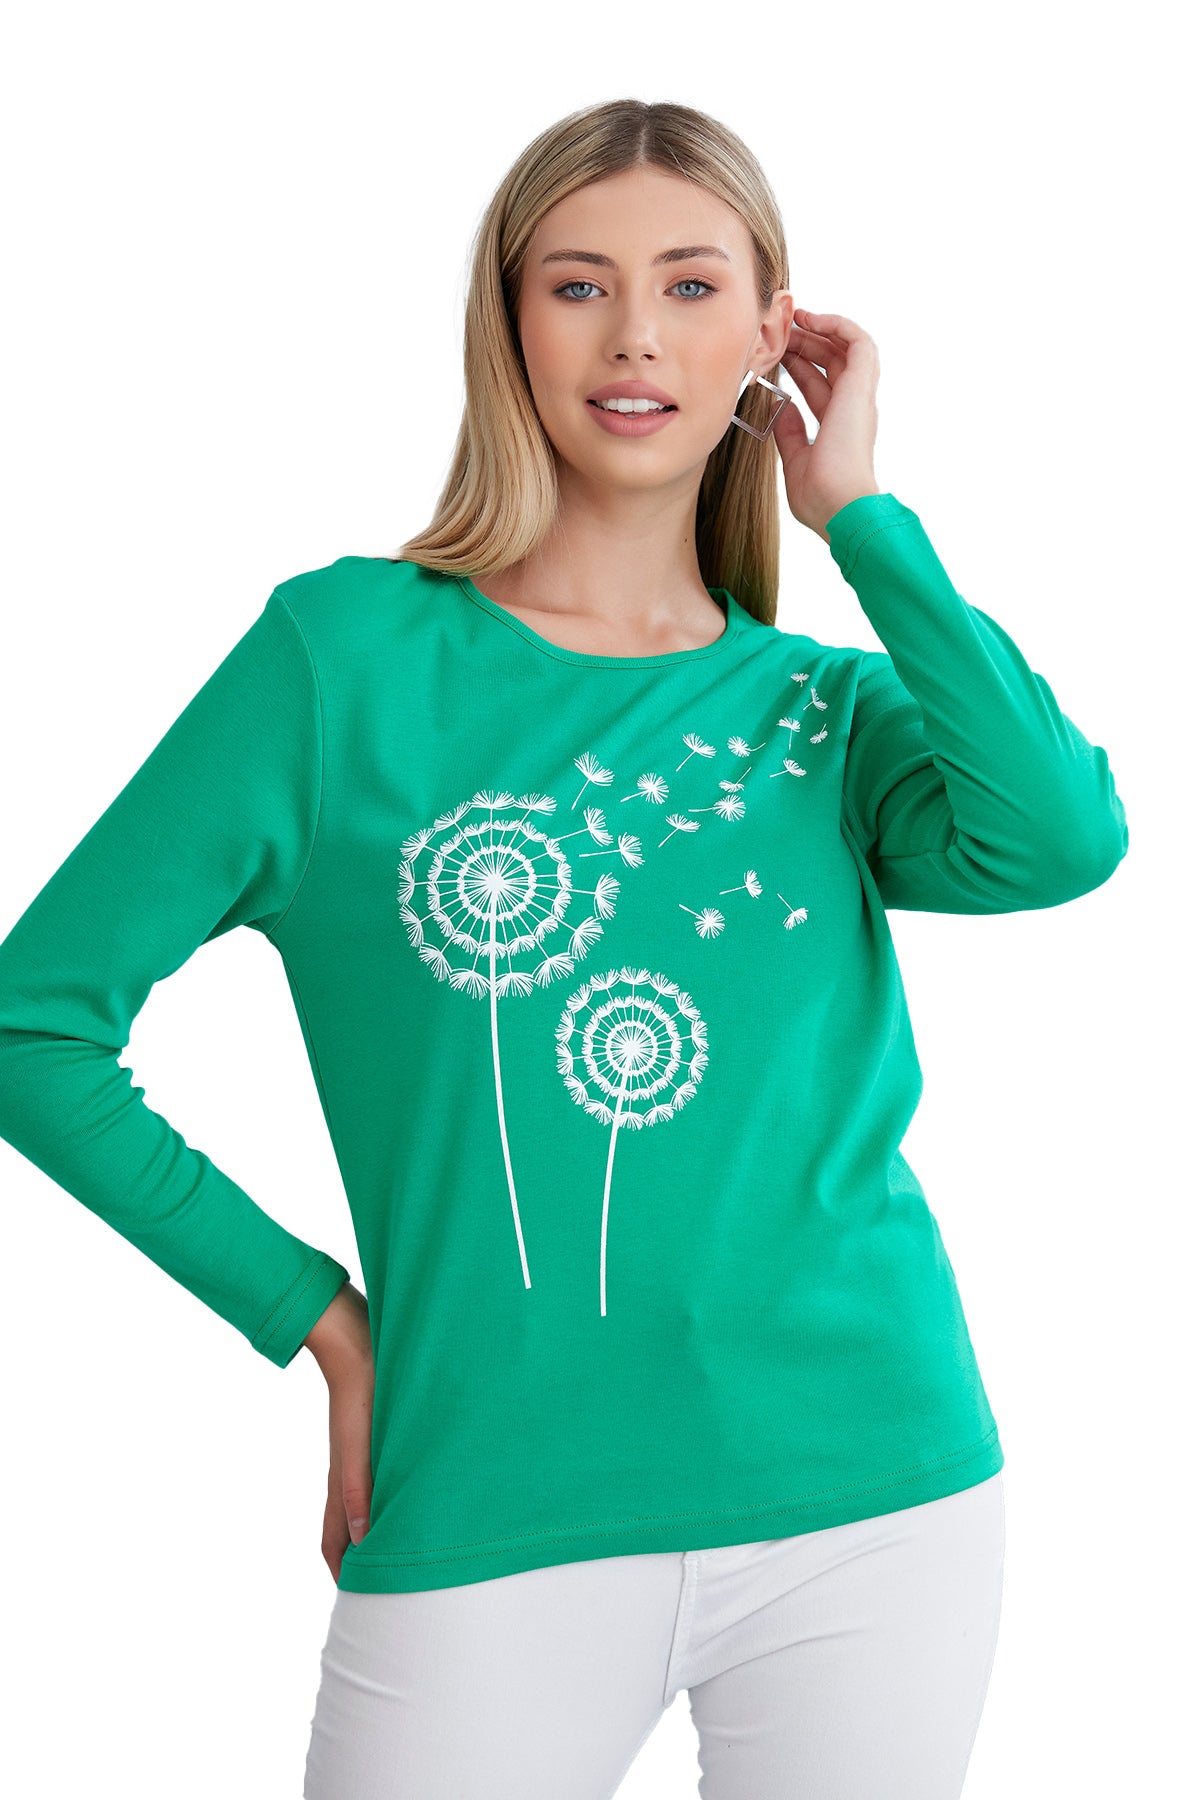 Long Sleeve Scoop Neck T-Shirt for Women in Dandelion Print - Wear Sierra